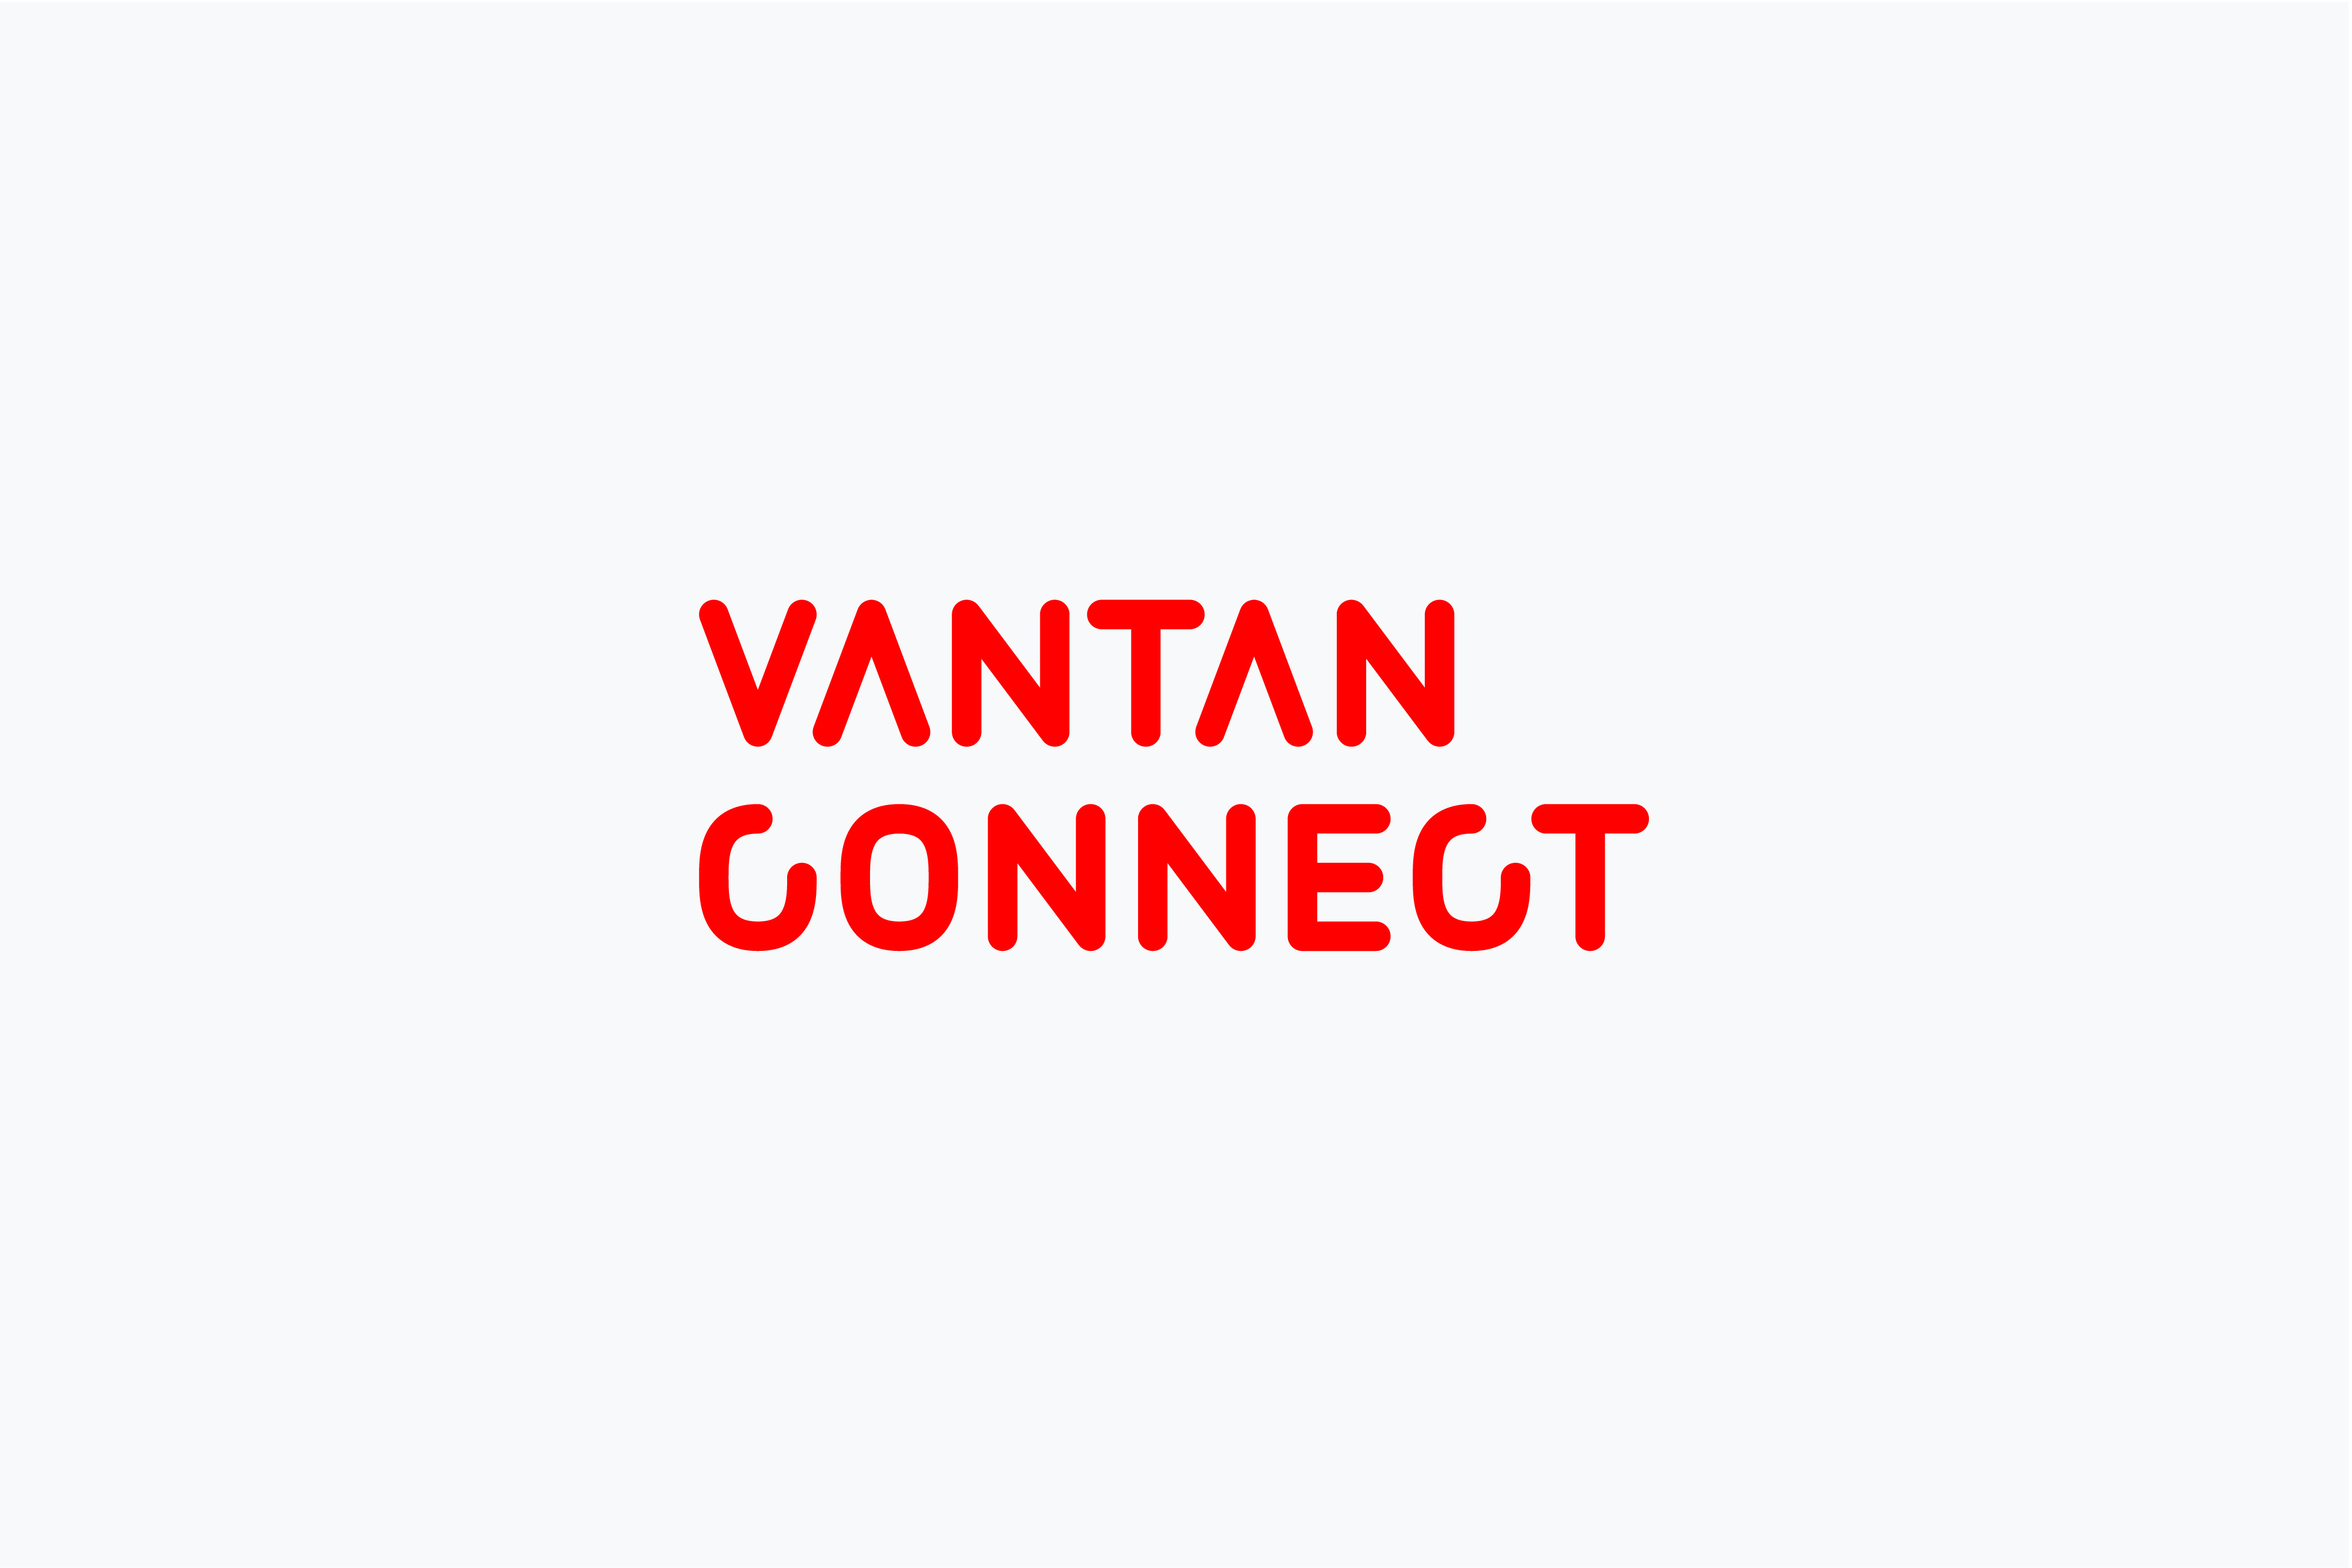 VANTAN CONNECT